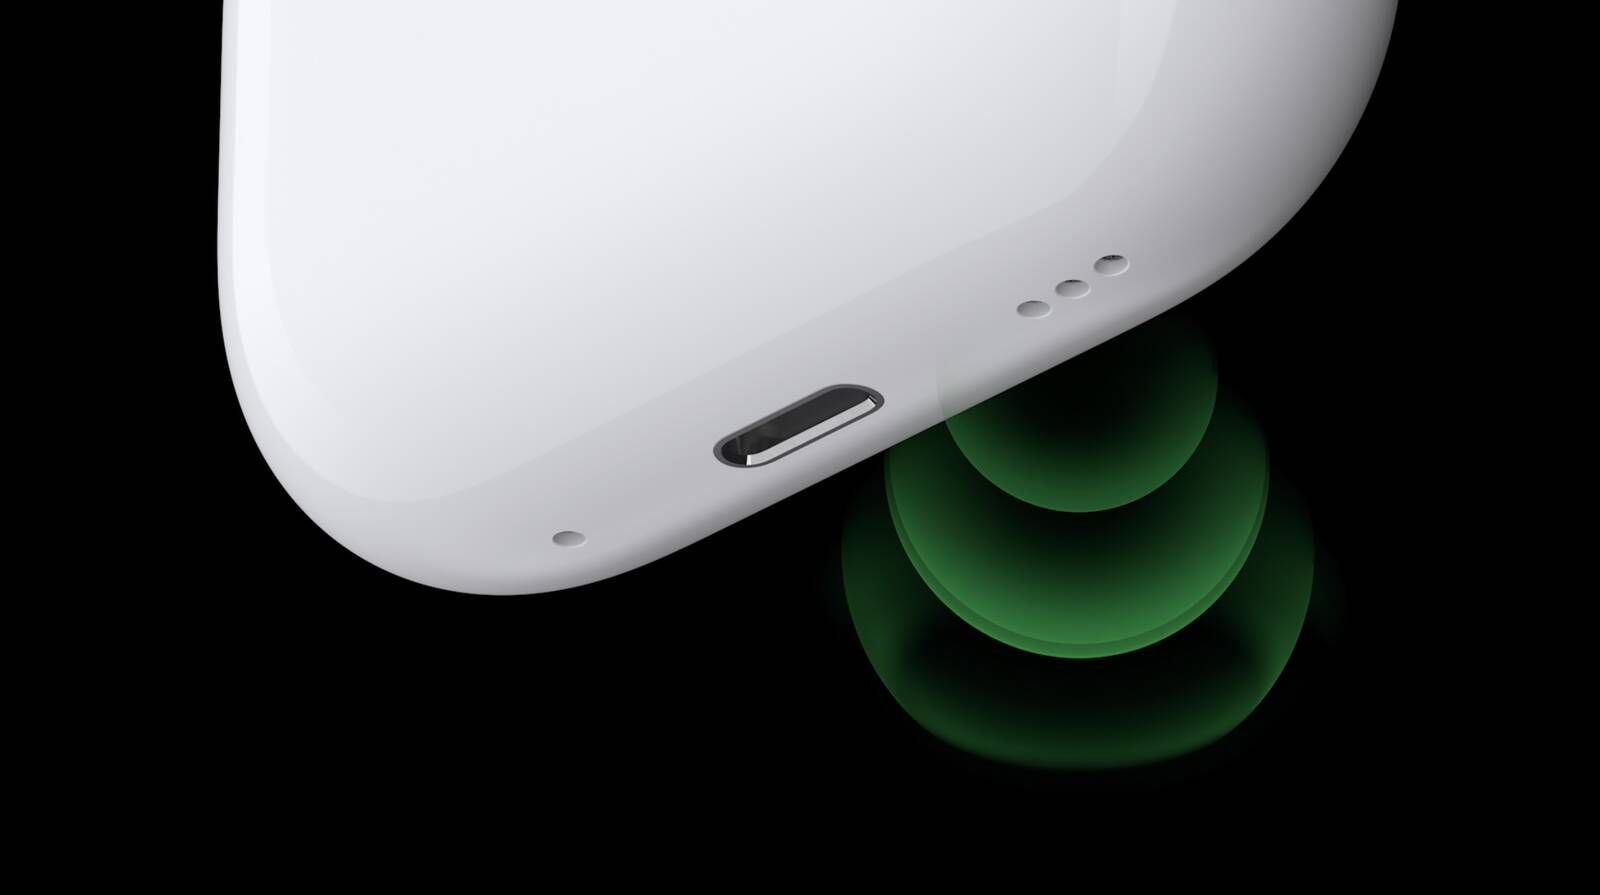 Від iPhoneIslam.com, футляр для бездротової зарядки AirPods 4 на чорному тлі із зеленим світлом, що відбивається під ним.